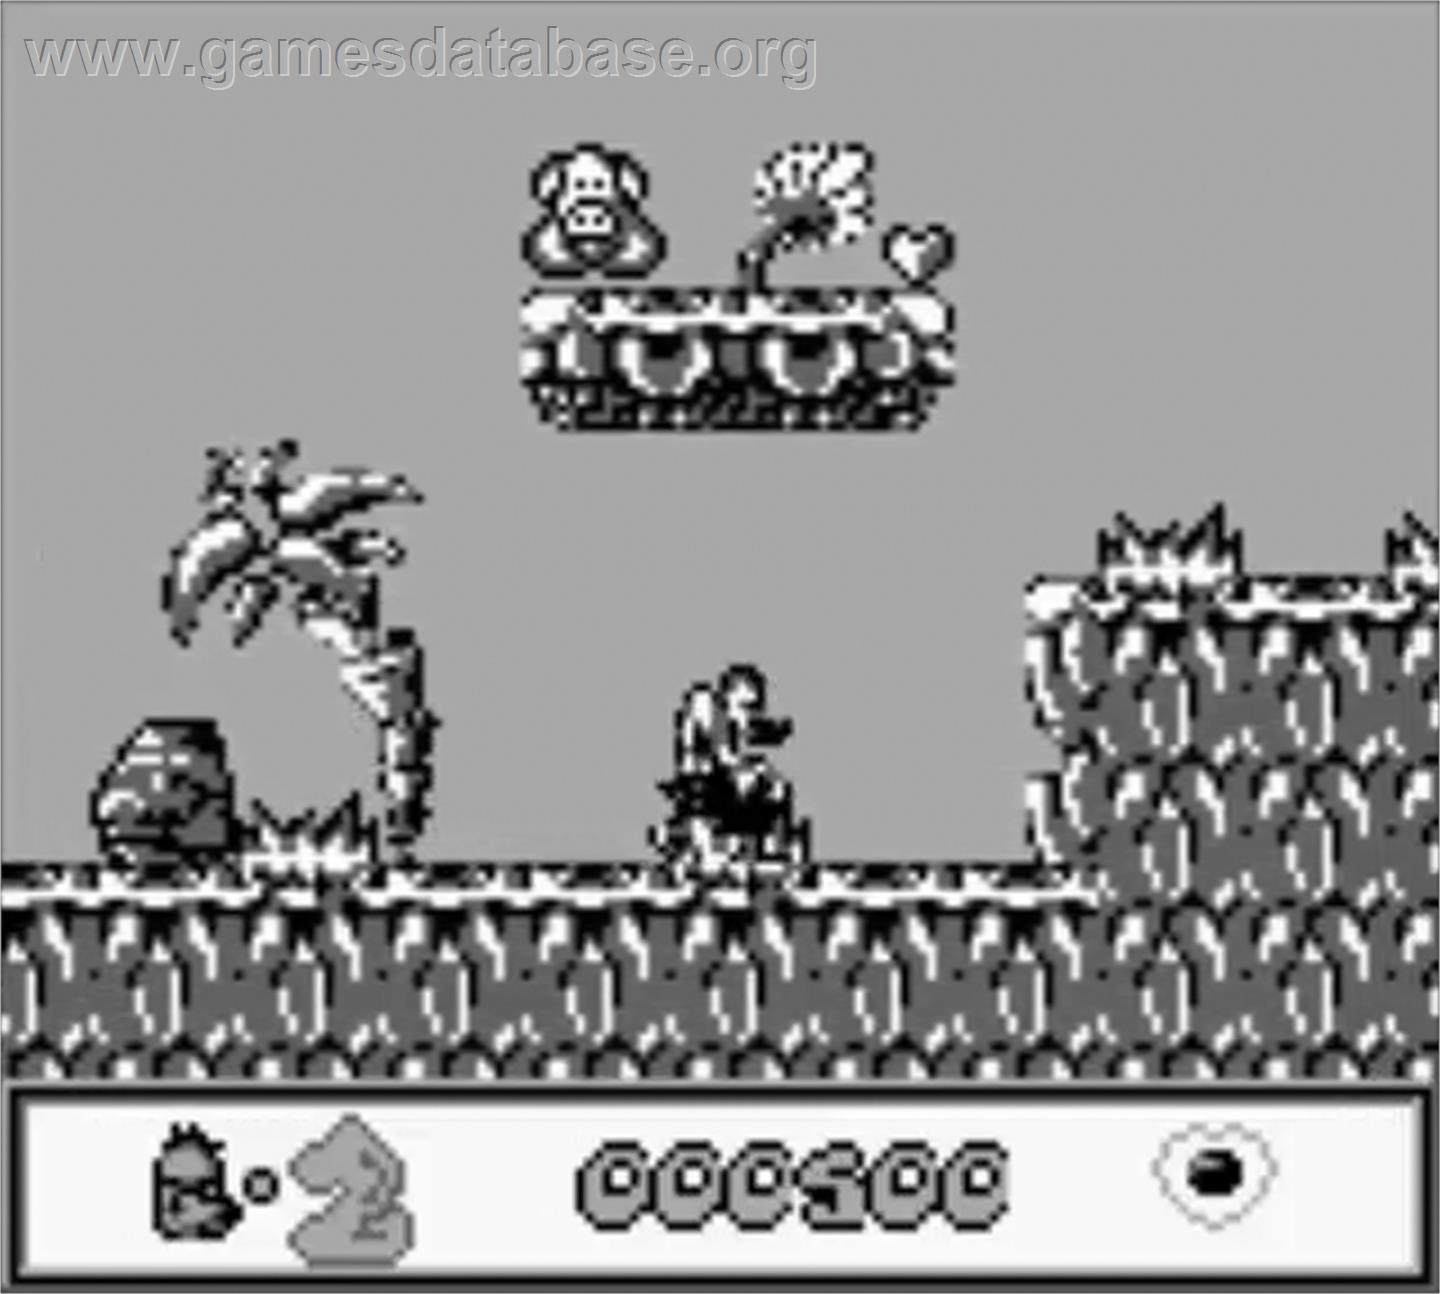 Chuck Rock - Nintendo Game Boy - Artwork - In Game